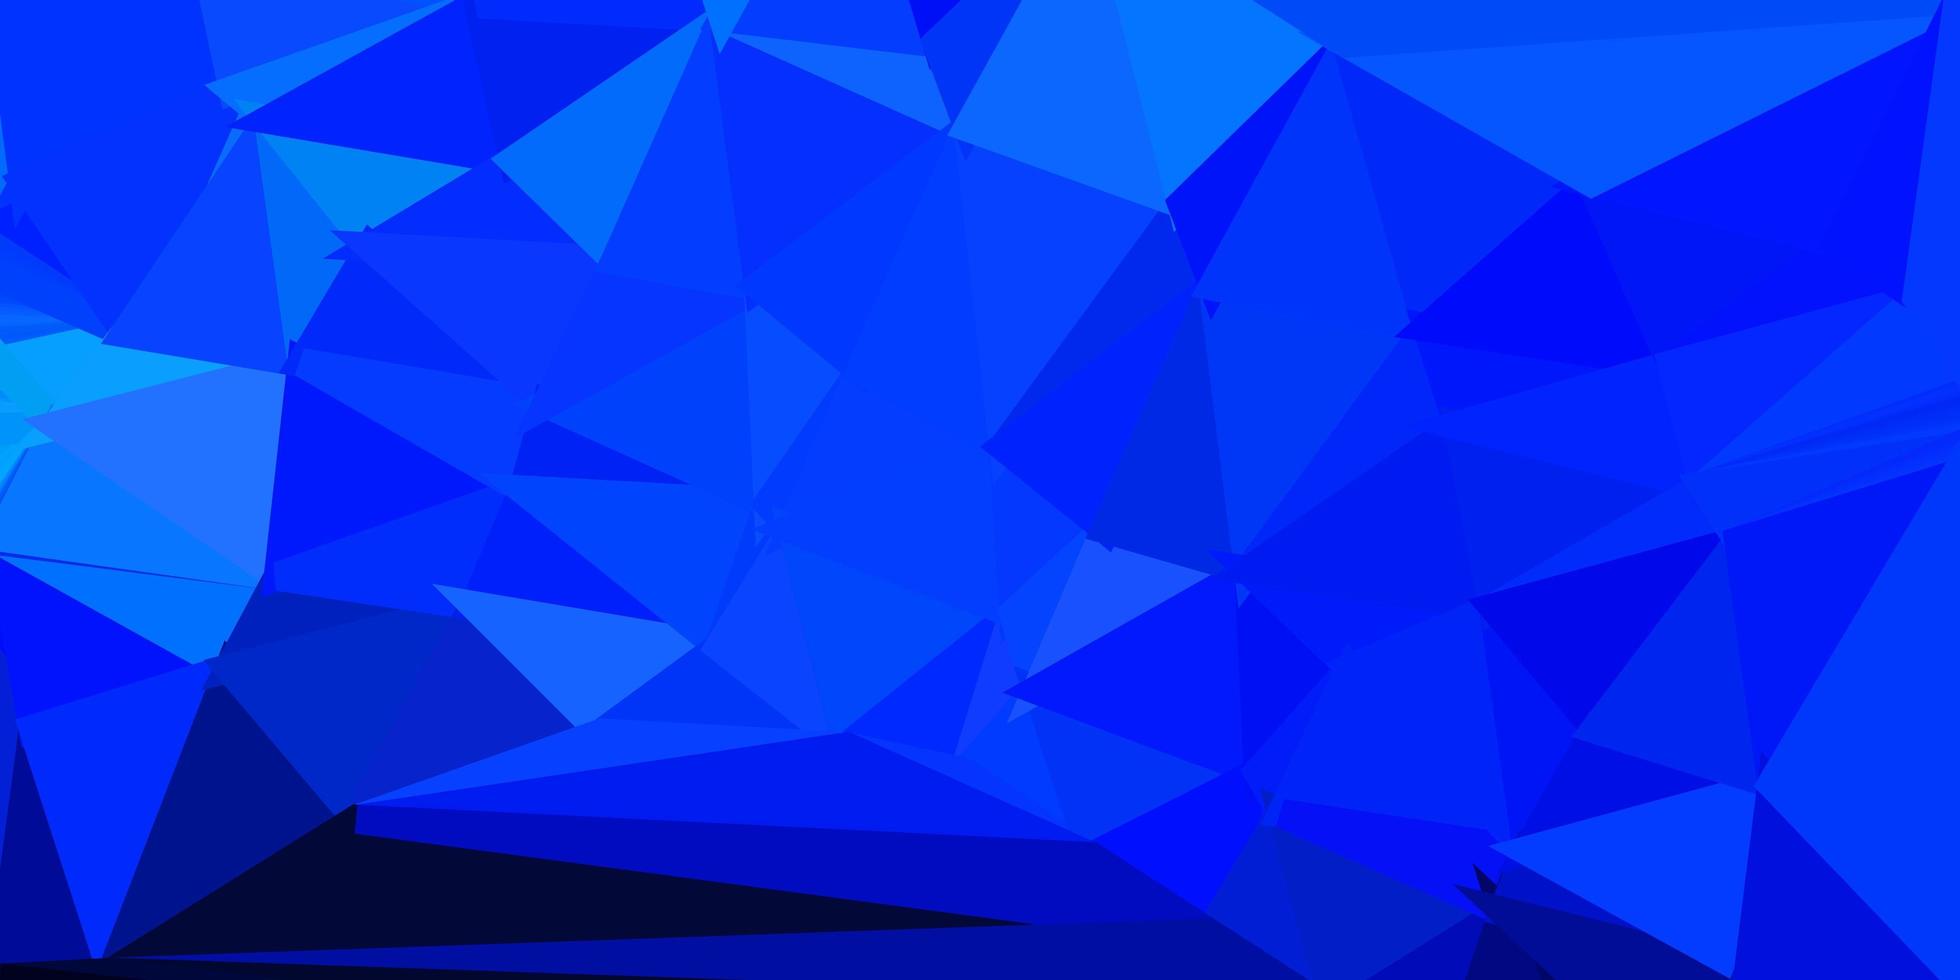 motif de triangle abstrait vecteur bleu foncé